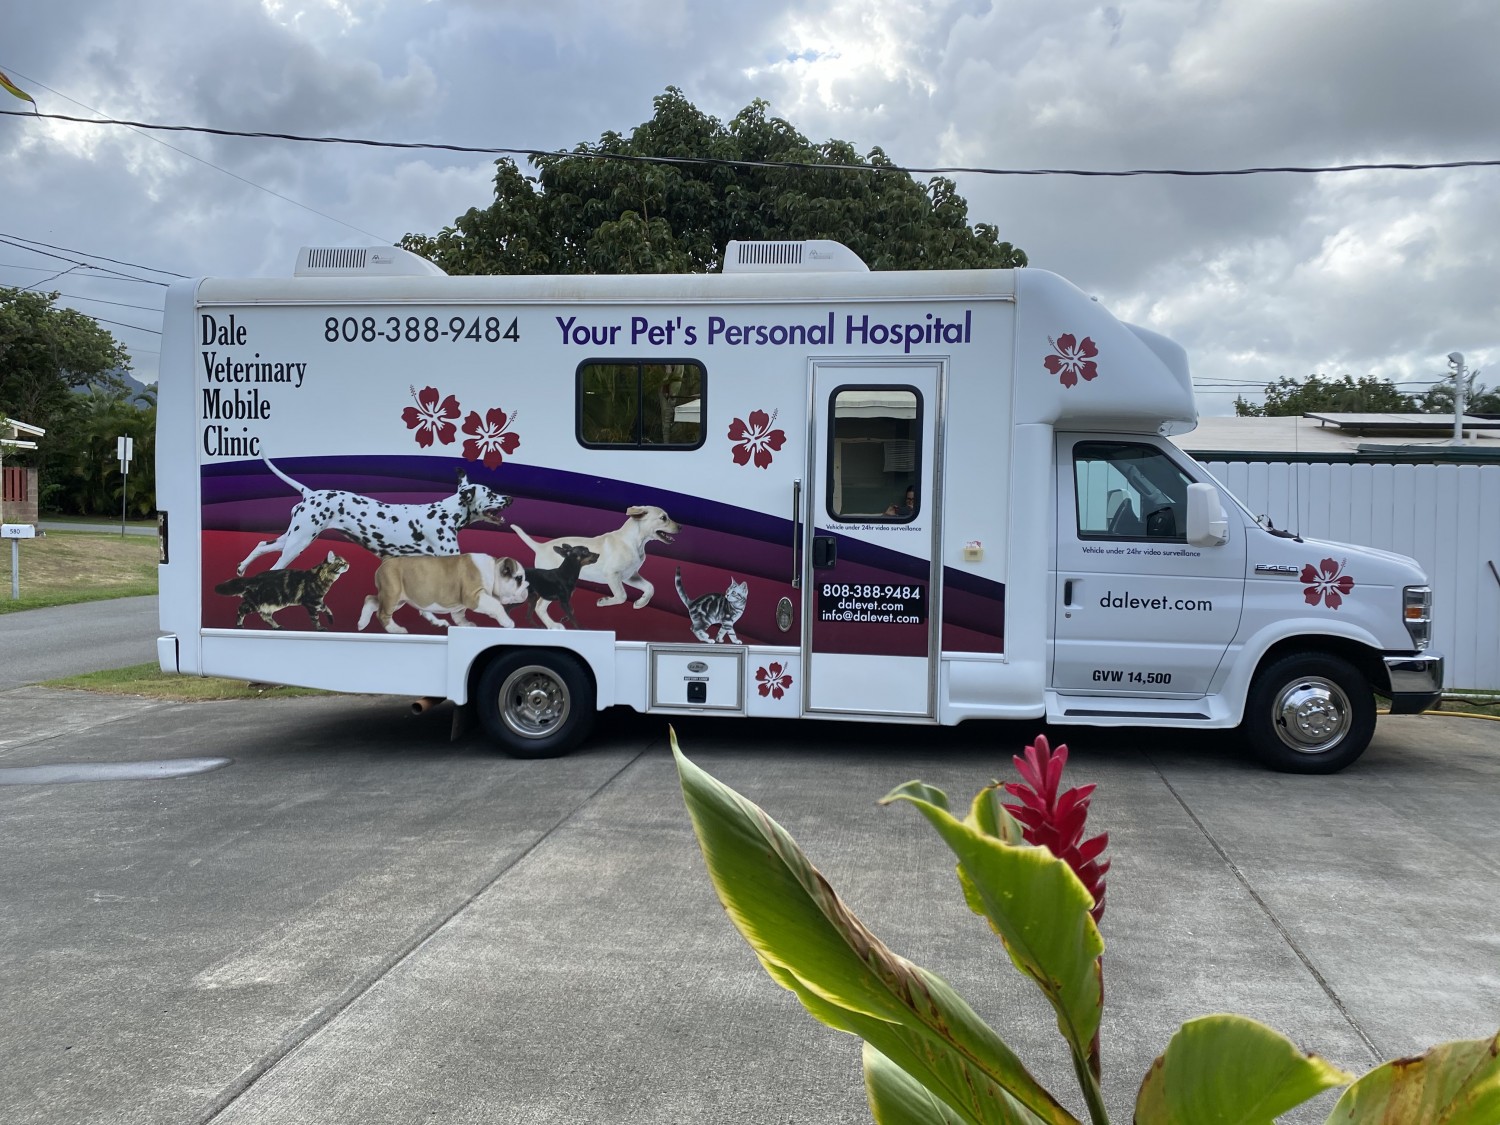 Dale Mobile Veterinary Clinic is fully equipped for house call exams, routine and supportive care, X-rays, surgery and dental services. Serving Waimanalo, Kailua, Kaneohe, Ahuimanu, Waiahole, Waikane, Kahaluu, Kaaawa, Hauula, Punaluu, Laie, Kahuku